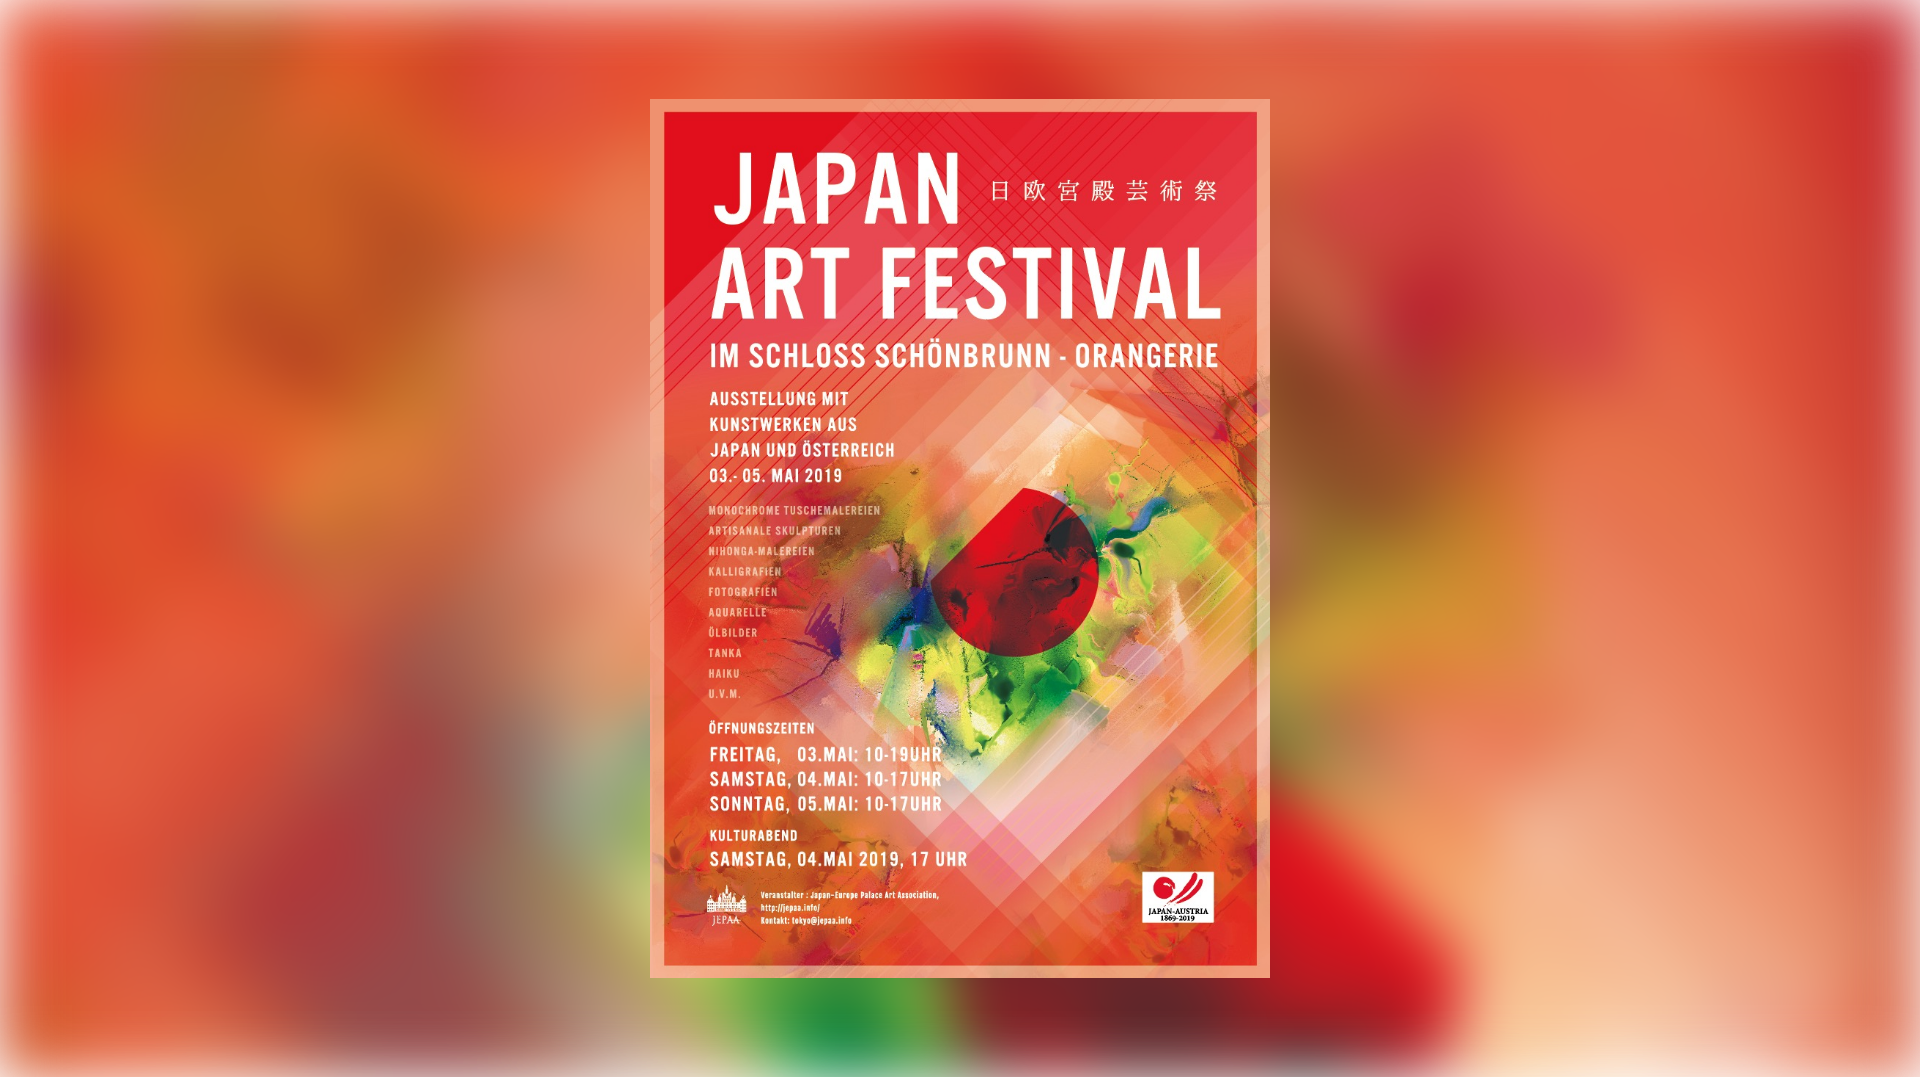 JAPAN ART FESTIVAL